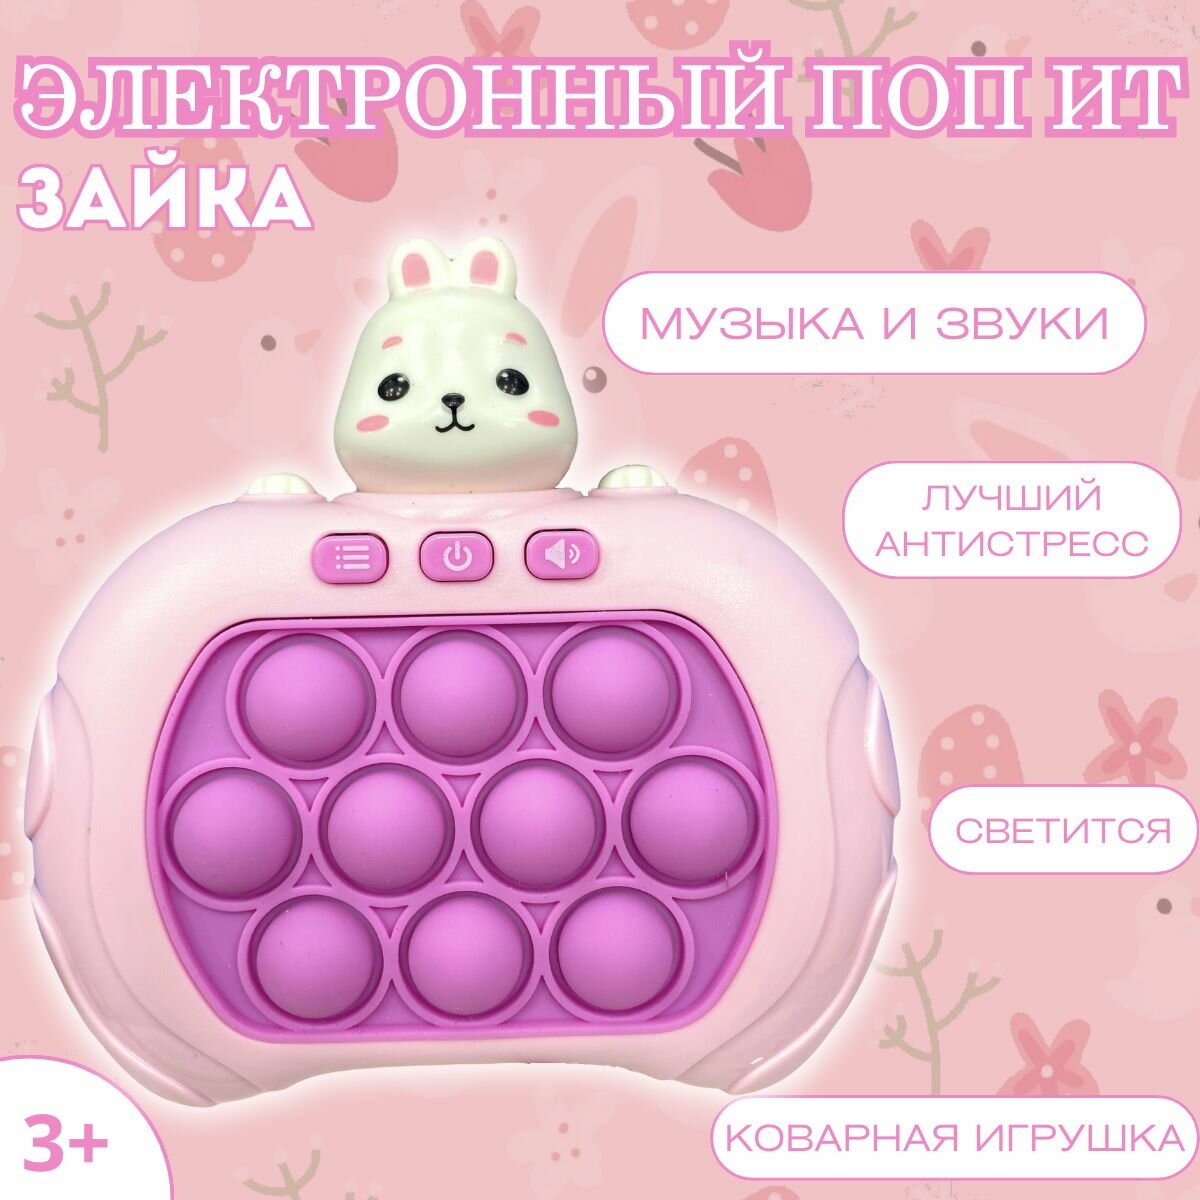 Электронный поп ит Зайка, игрушка Антистресс для детей